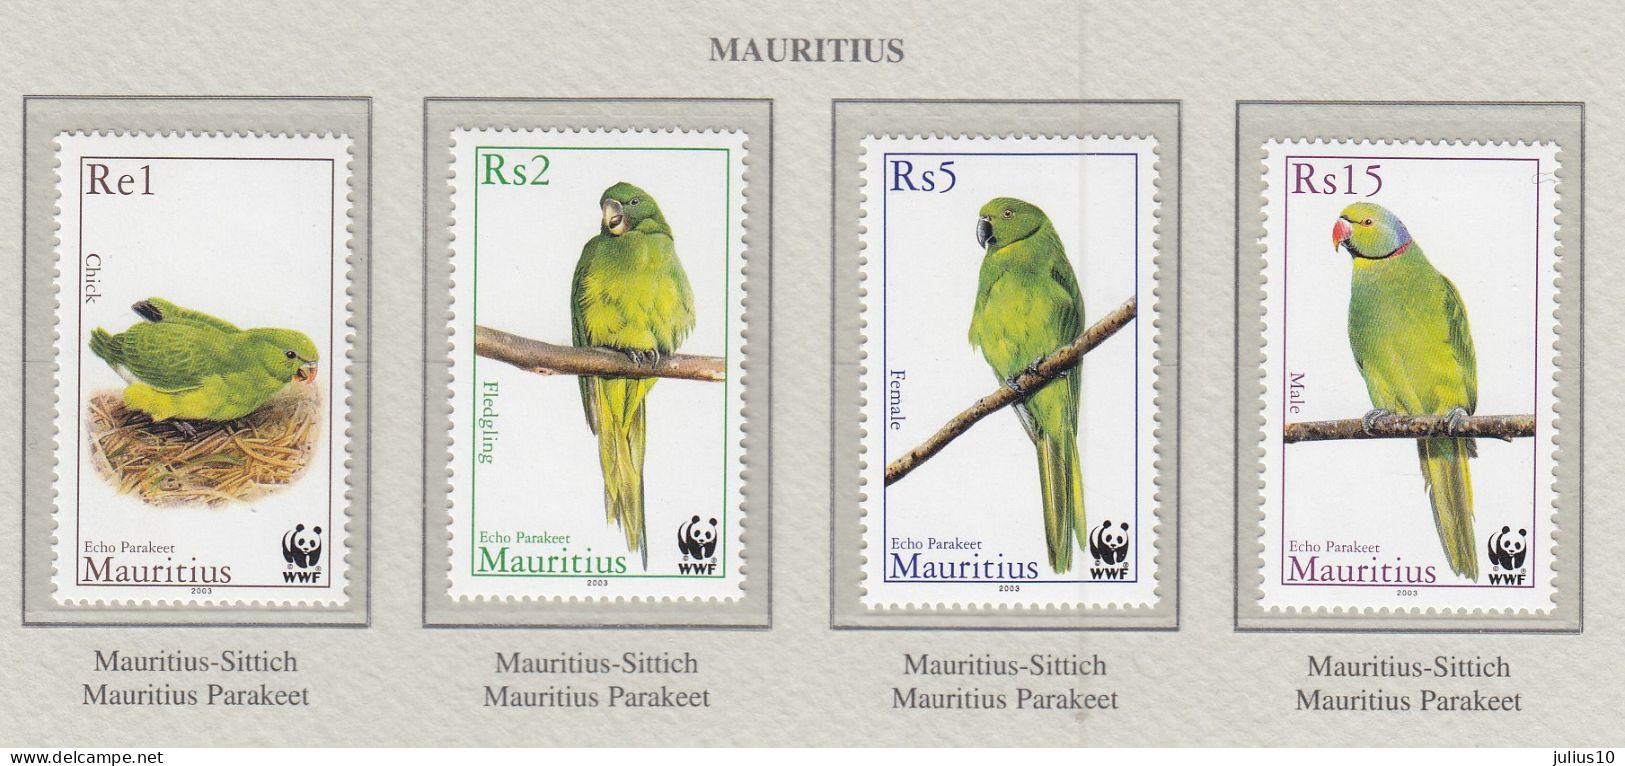 MAURITIUS 2003 WWF Birds Parrots Mi 963-966 MNH(**) Fauna 671 - Papageien